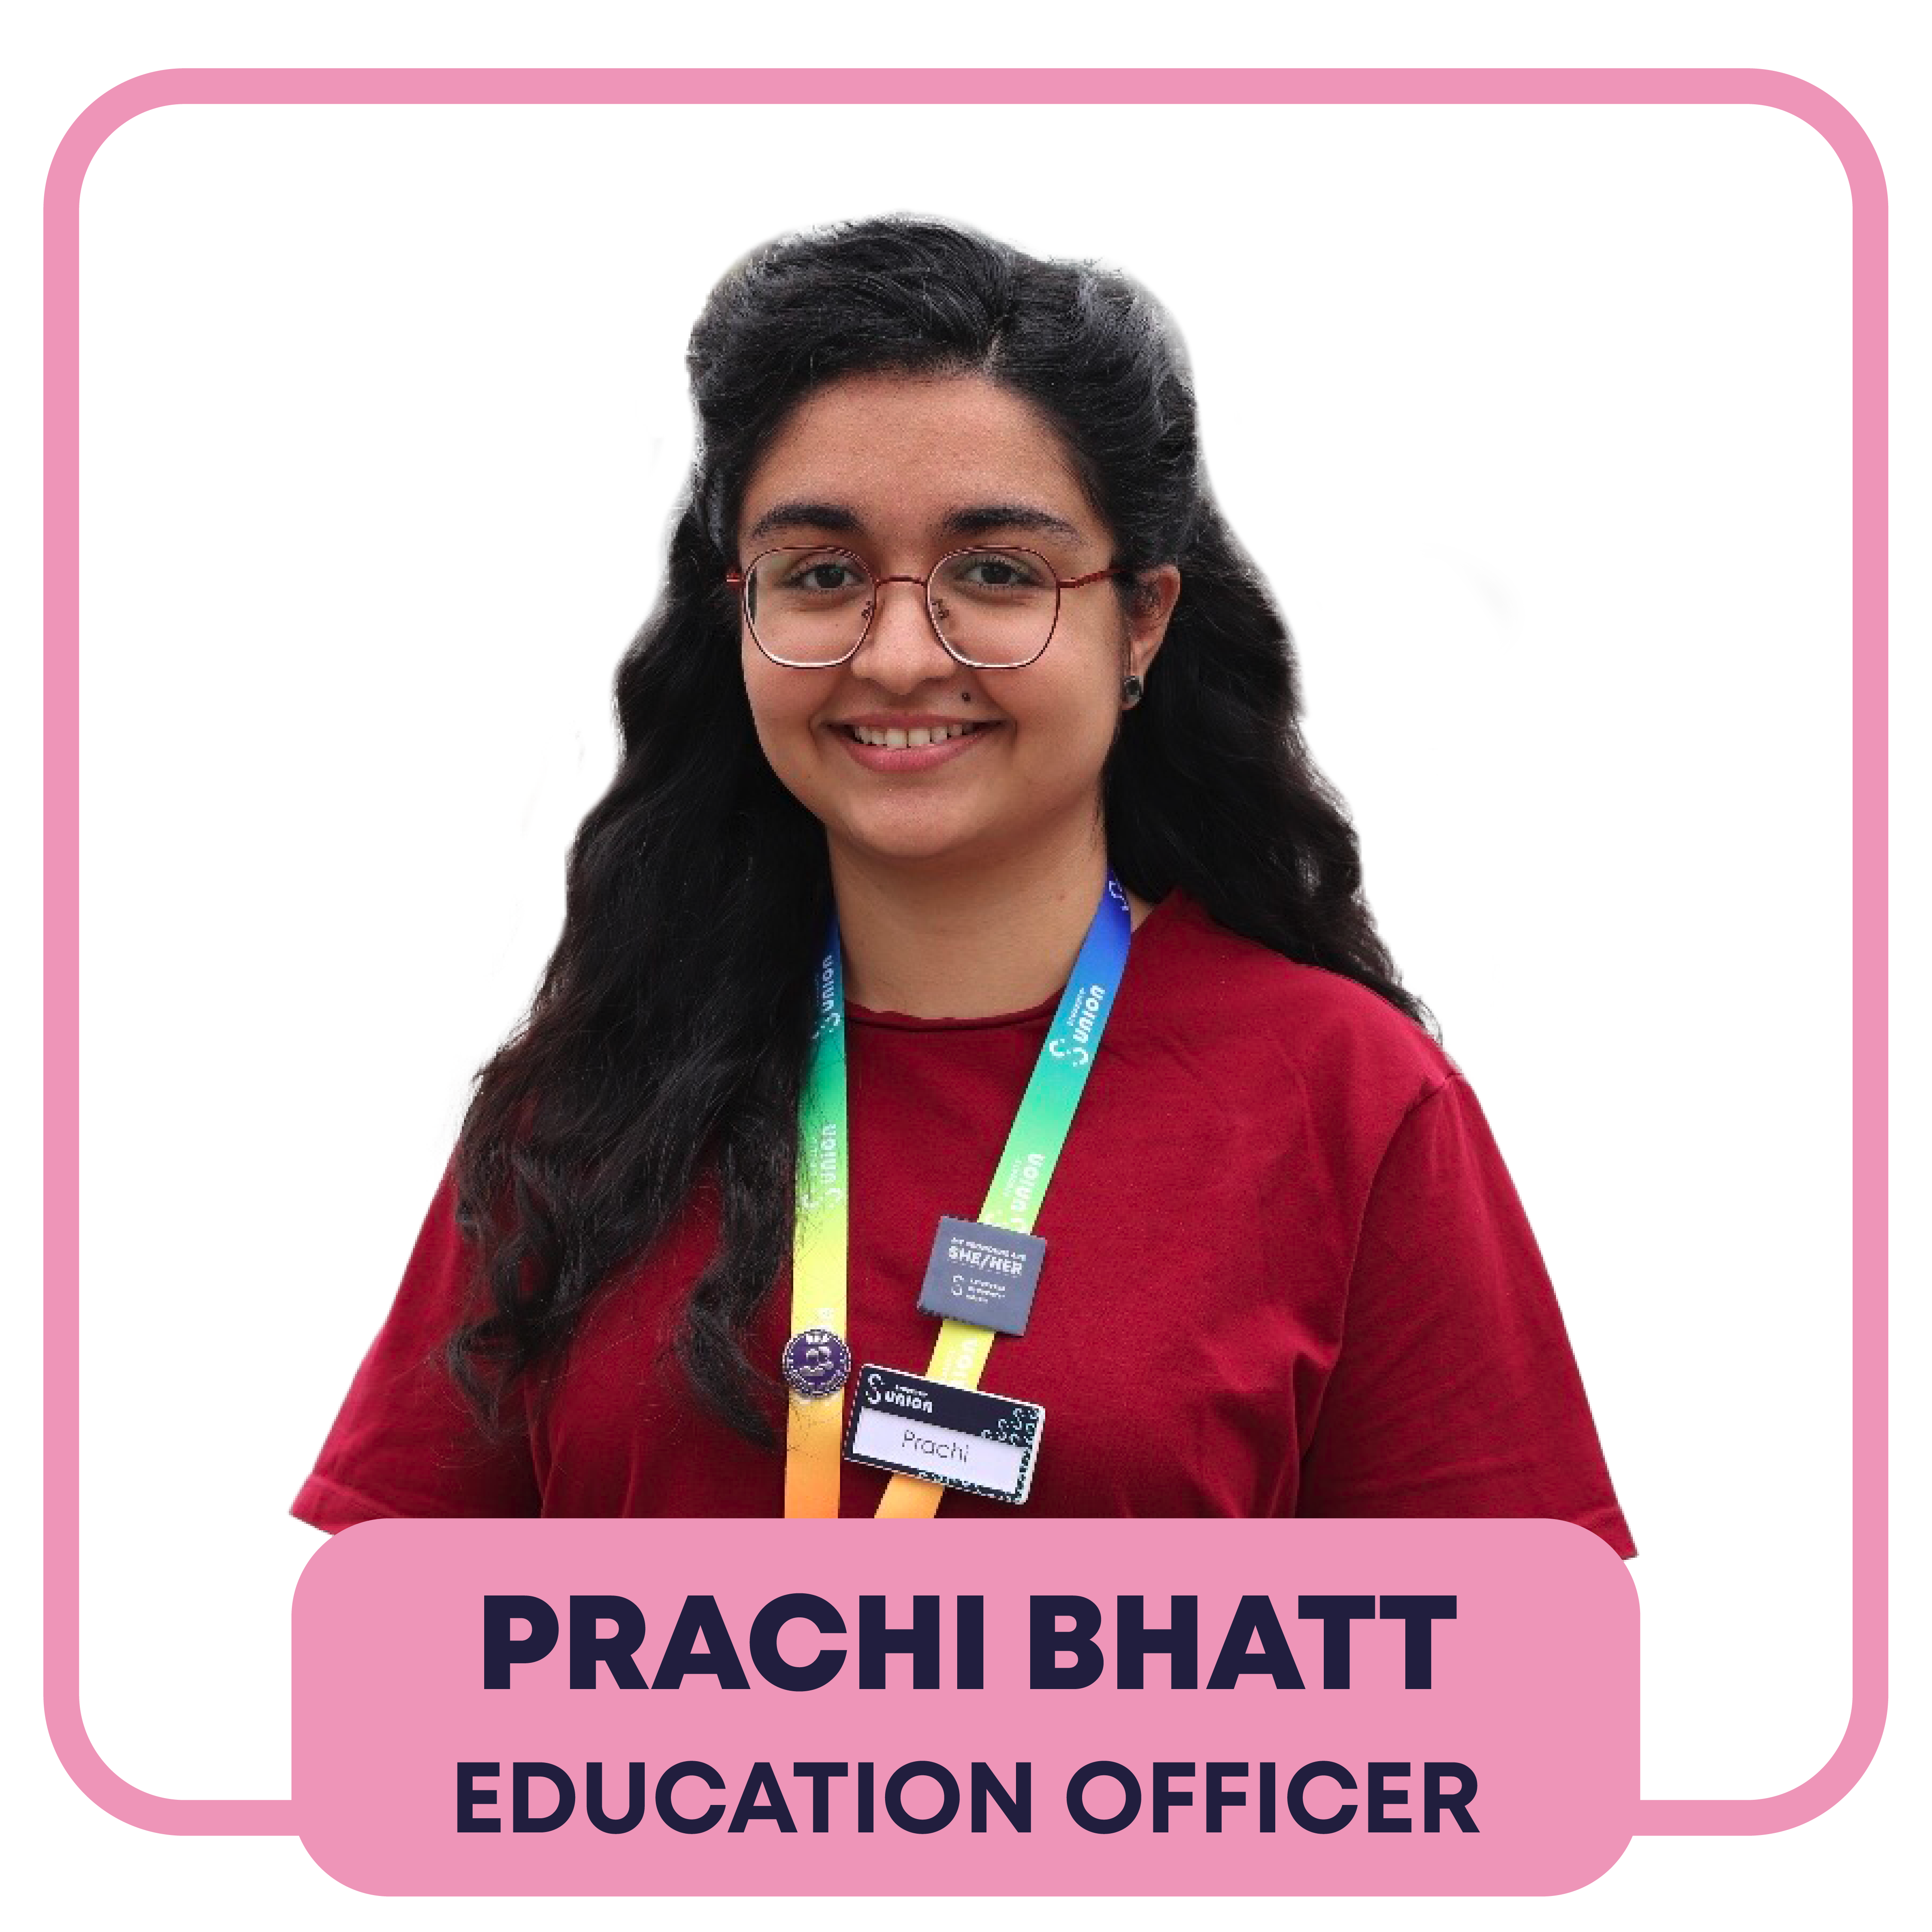 Image of Prachi Bhatt, Education Officer 2023/24